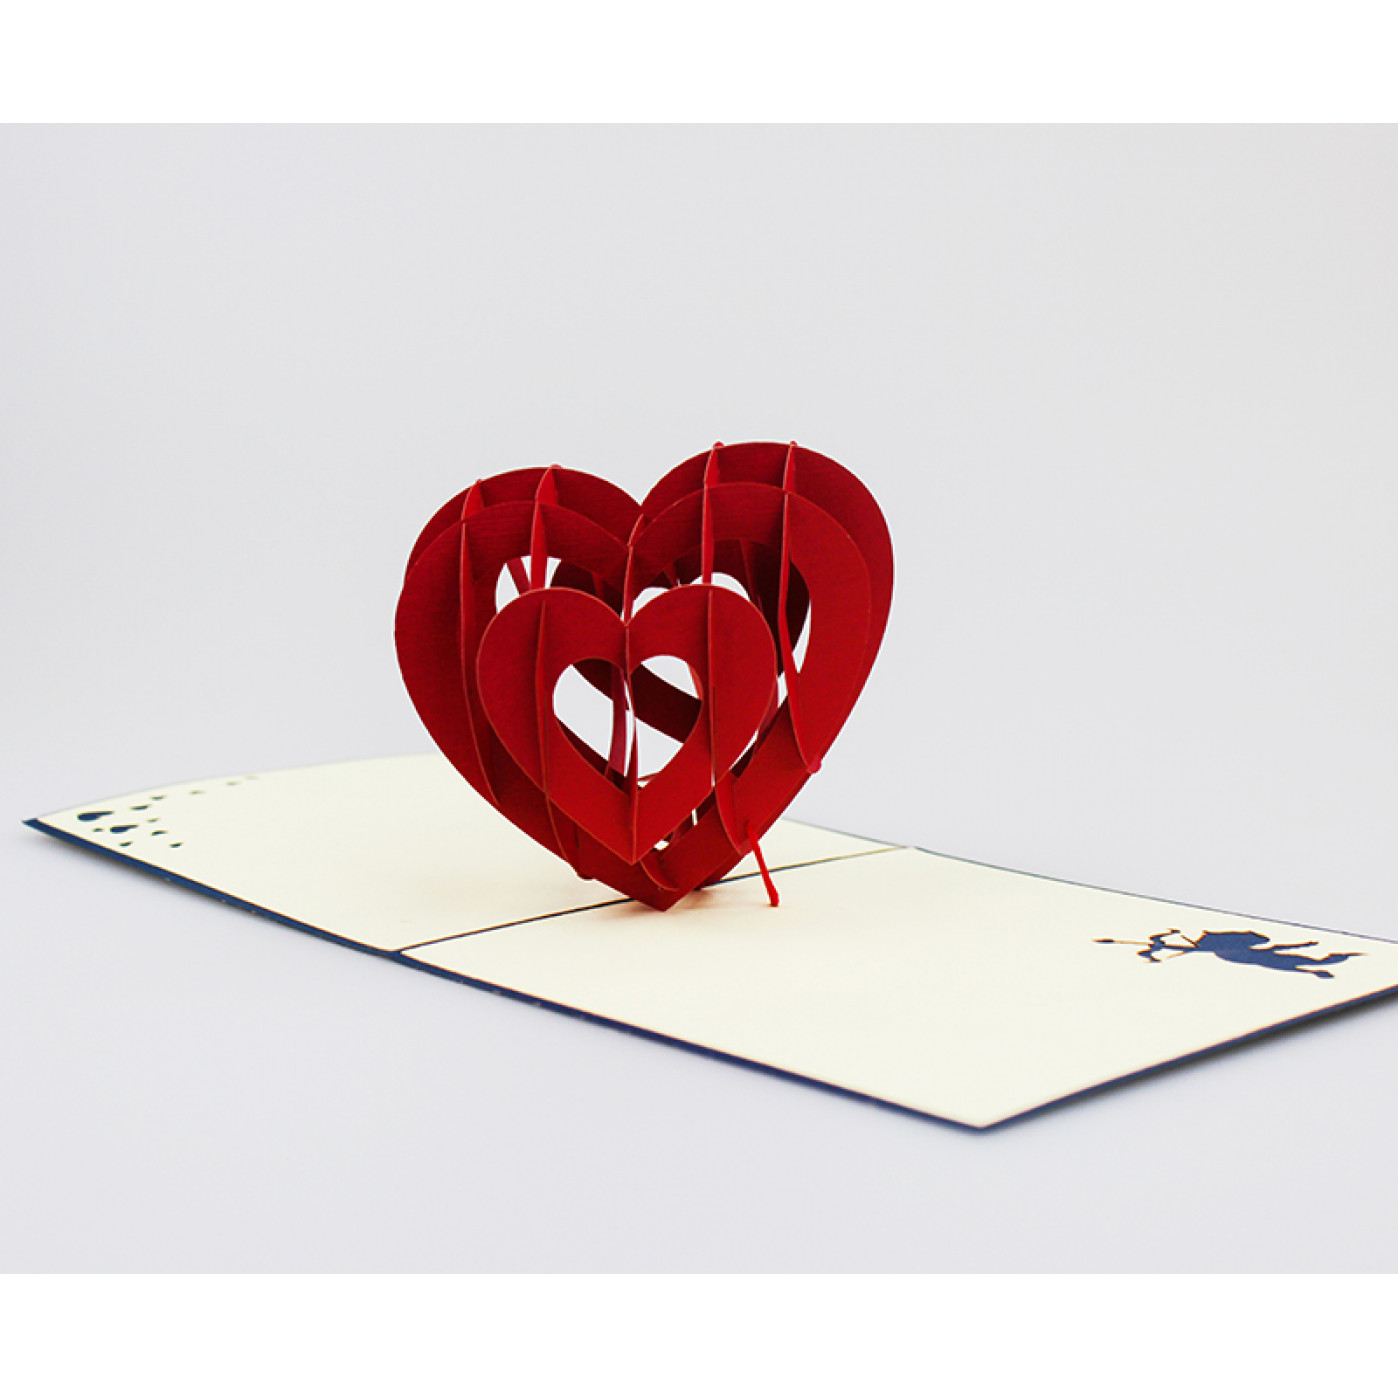 Объемная открытка Сердце в ладонях по цене ₽ в интернет-магазине подарков MagicMag